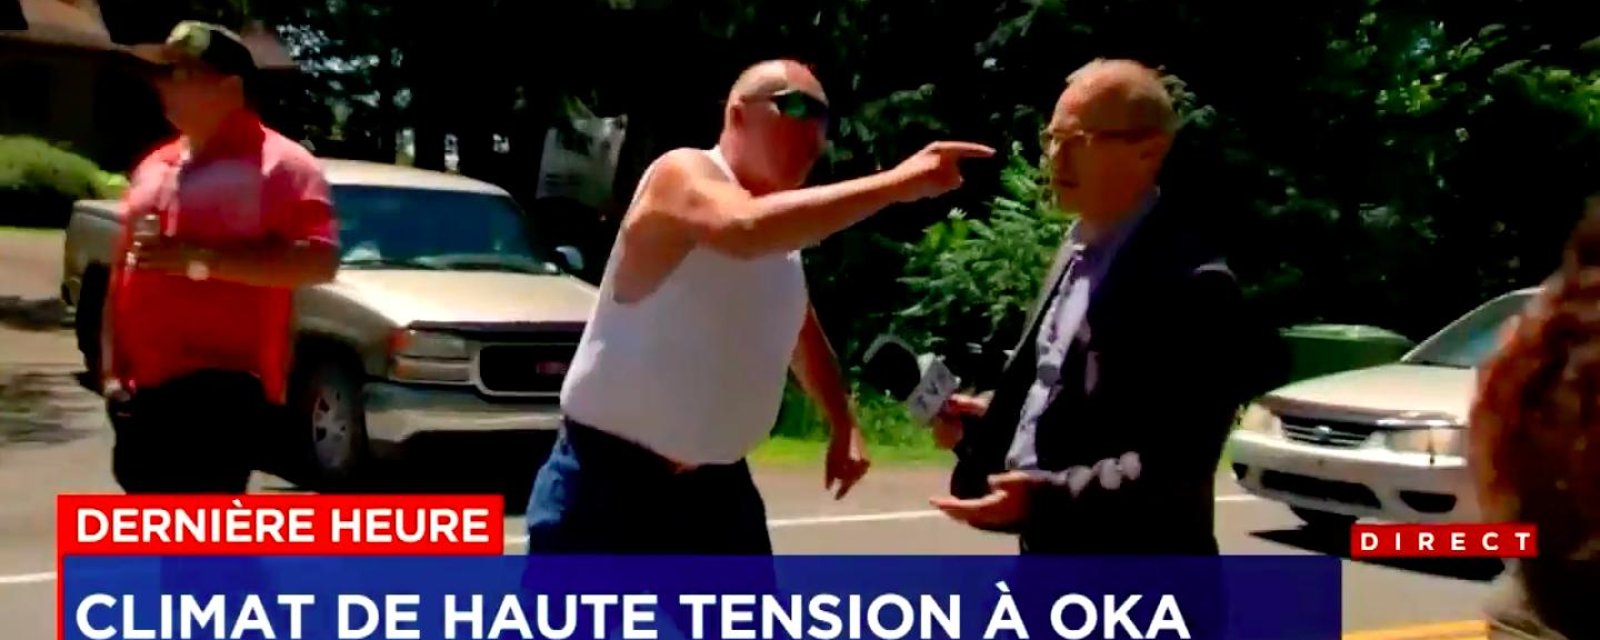 DERNIÈRE HEURE: Un journaliste de TVA se fait menacer en direct par un homme incroyablement agressif